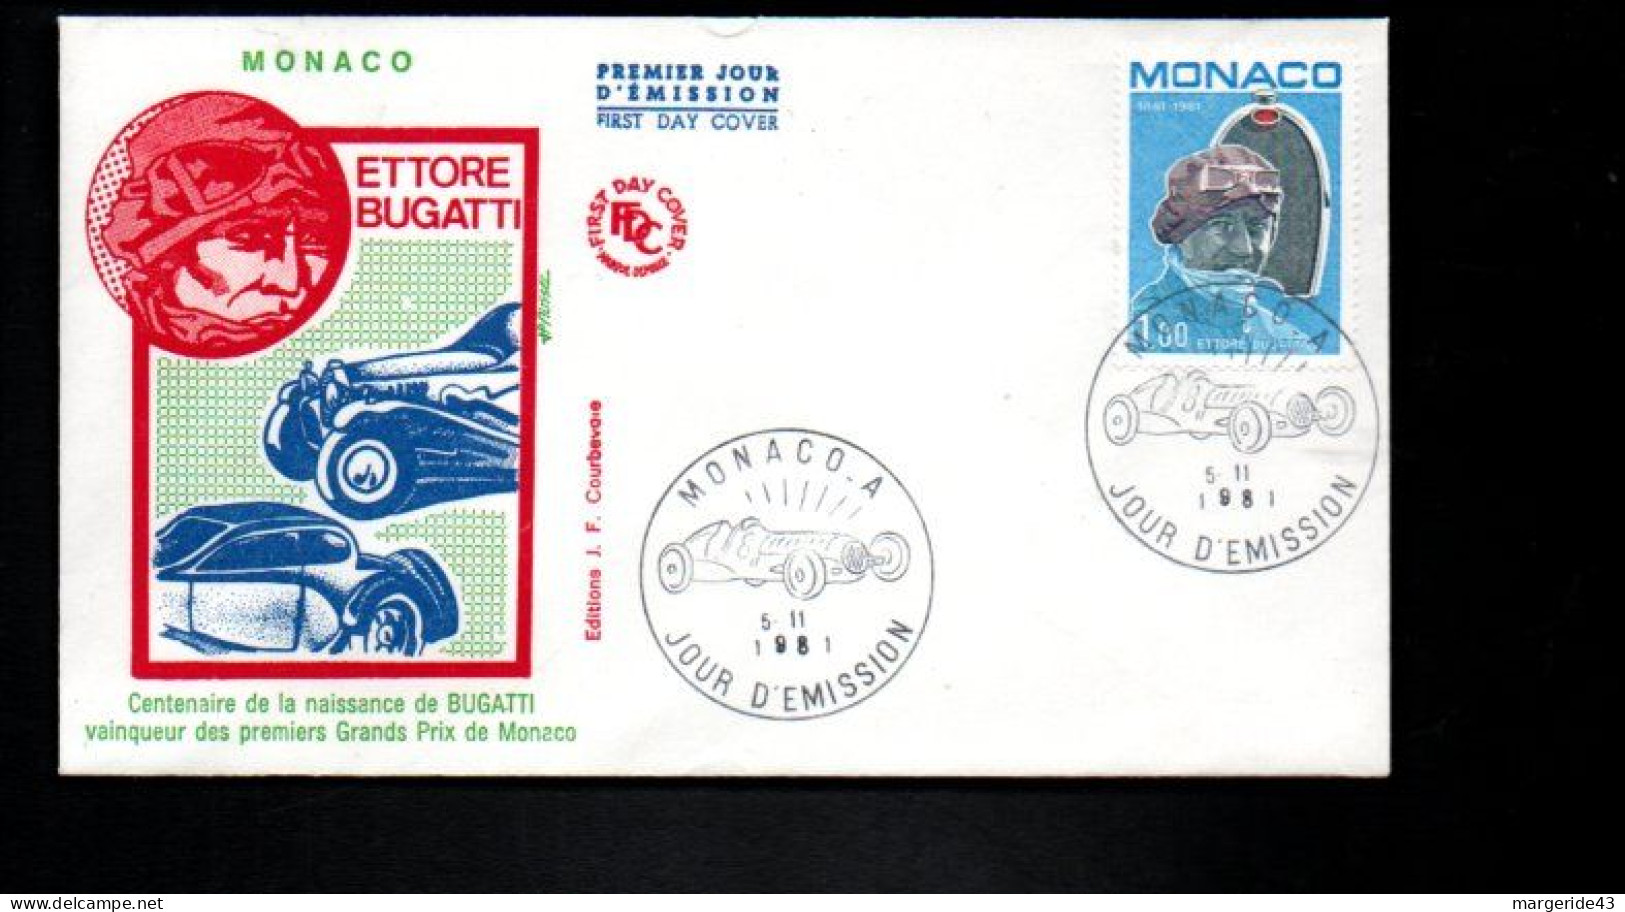 MONACO FDC 191 ETTORE BUGATTI - Automobile